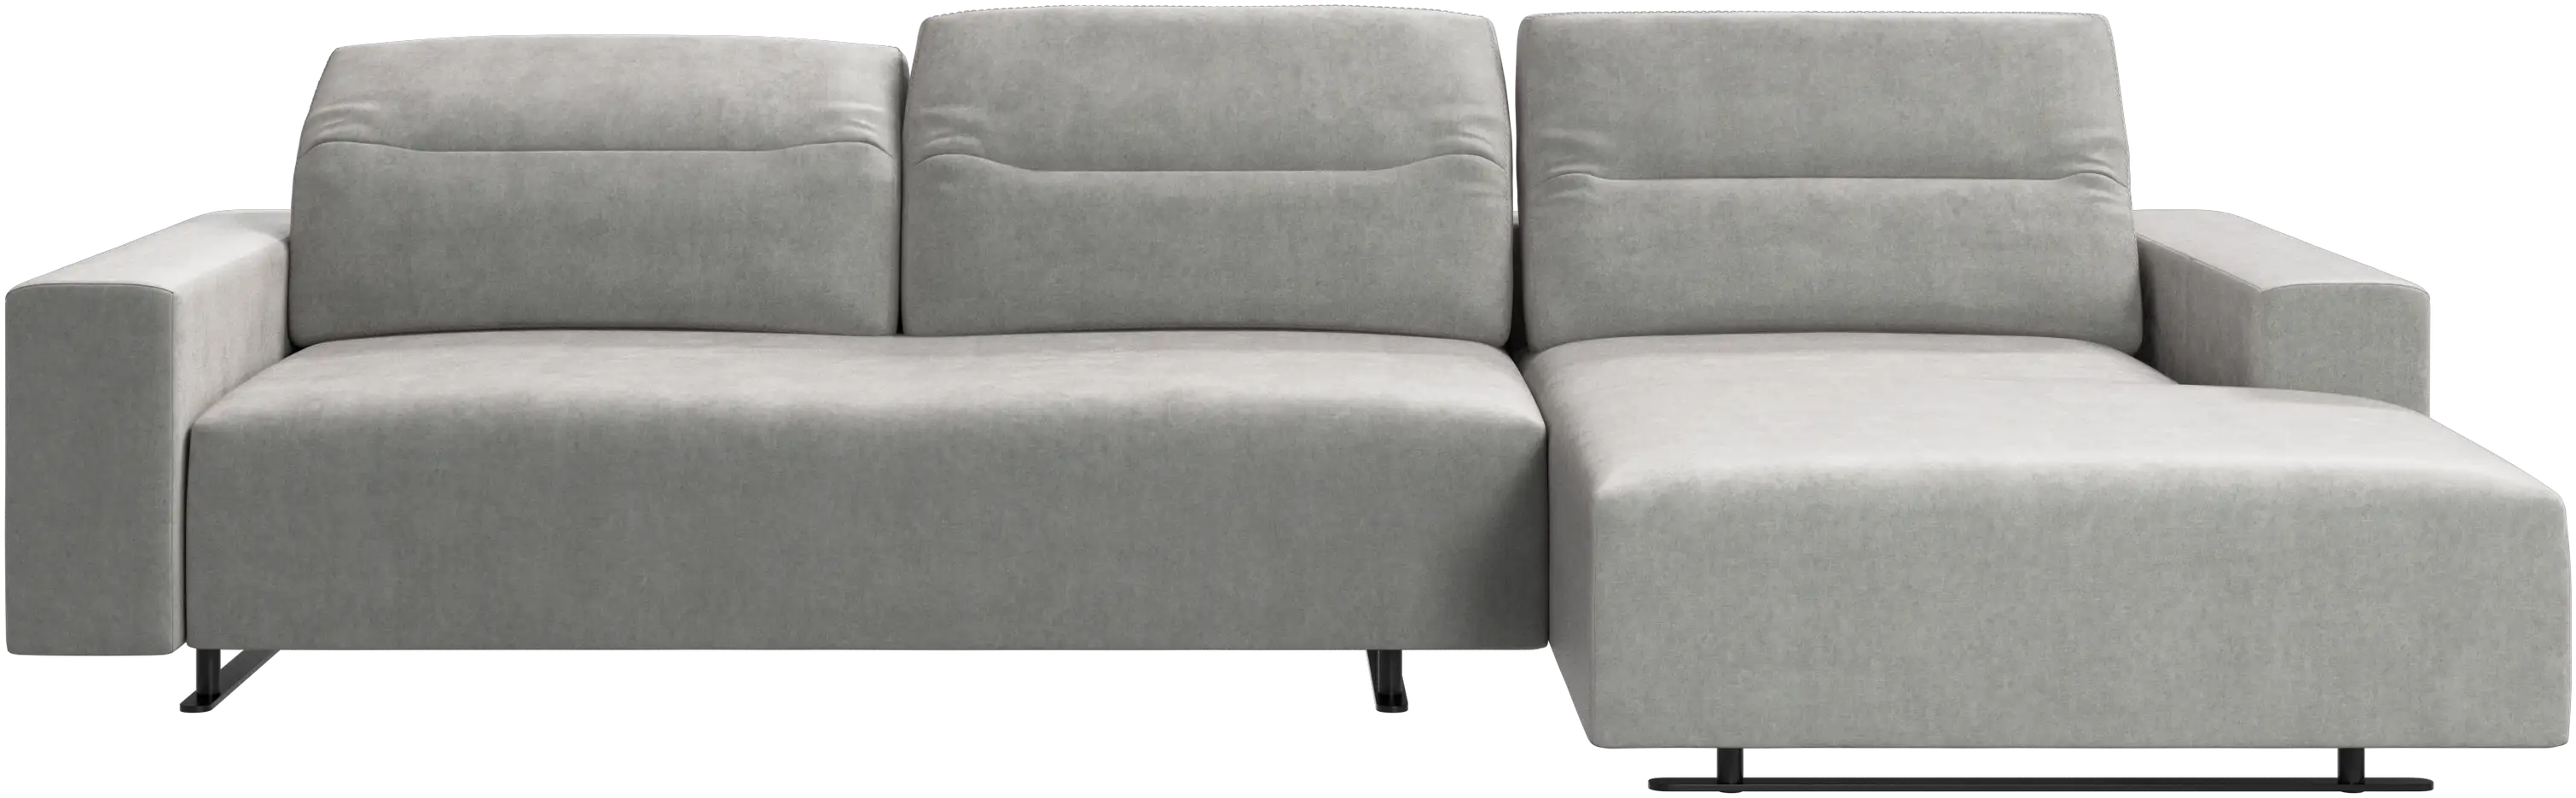 Sofá Hampton con respaldo ajustable, módulo de descanso y almacenamiento en ambos lados